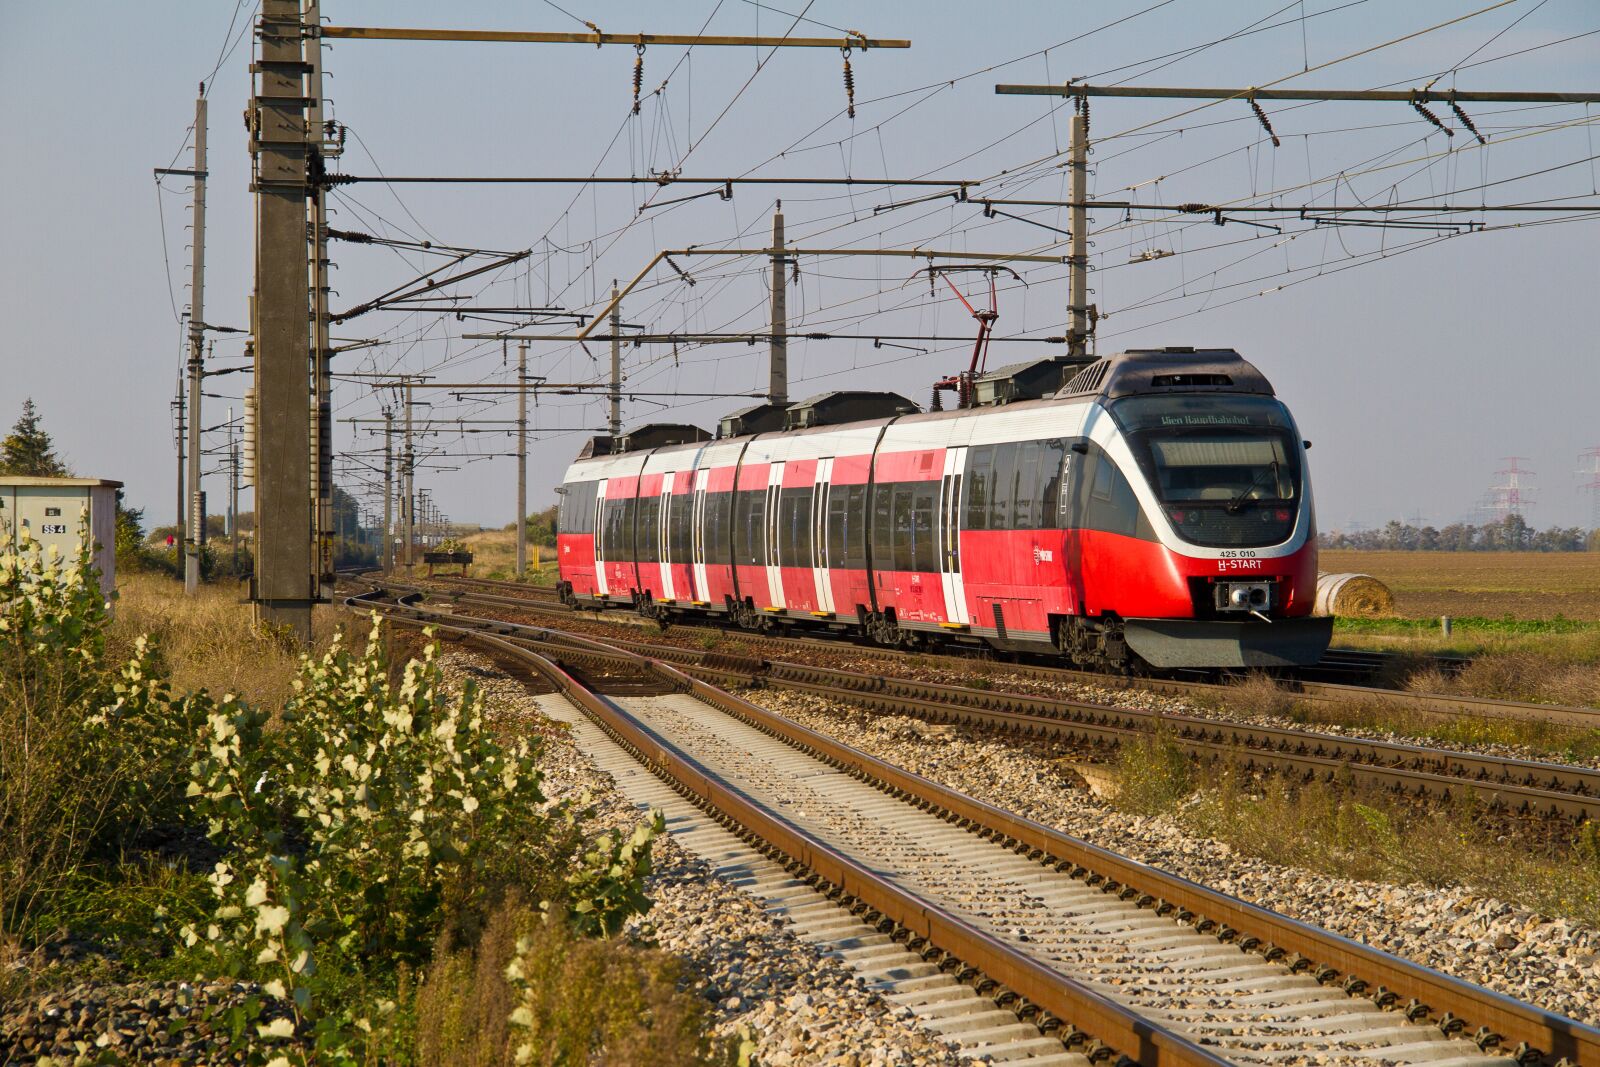 Canon EOS 7D sample photo. Railway, locomotive, rail- cars photography